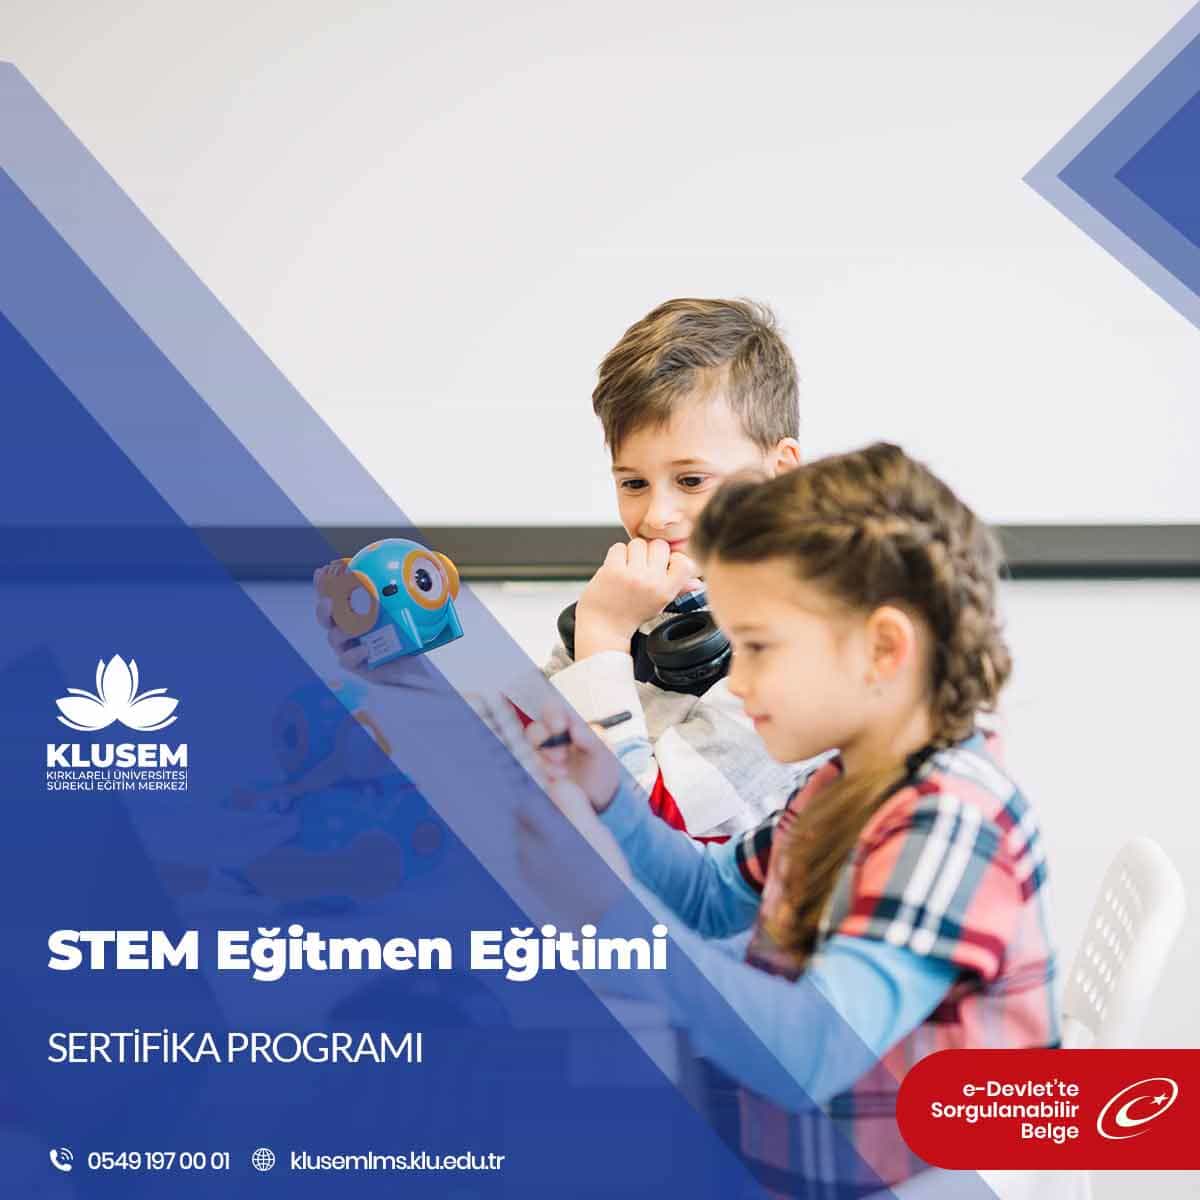 STEM Eğitmen Eğitimi Sertifikalı Eğitim Programı (Uygulayıcı Belge)